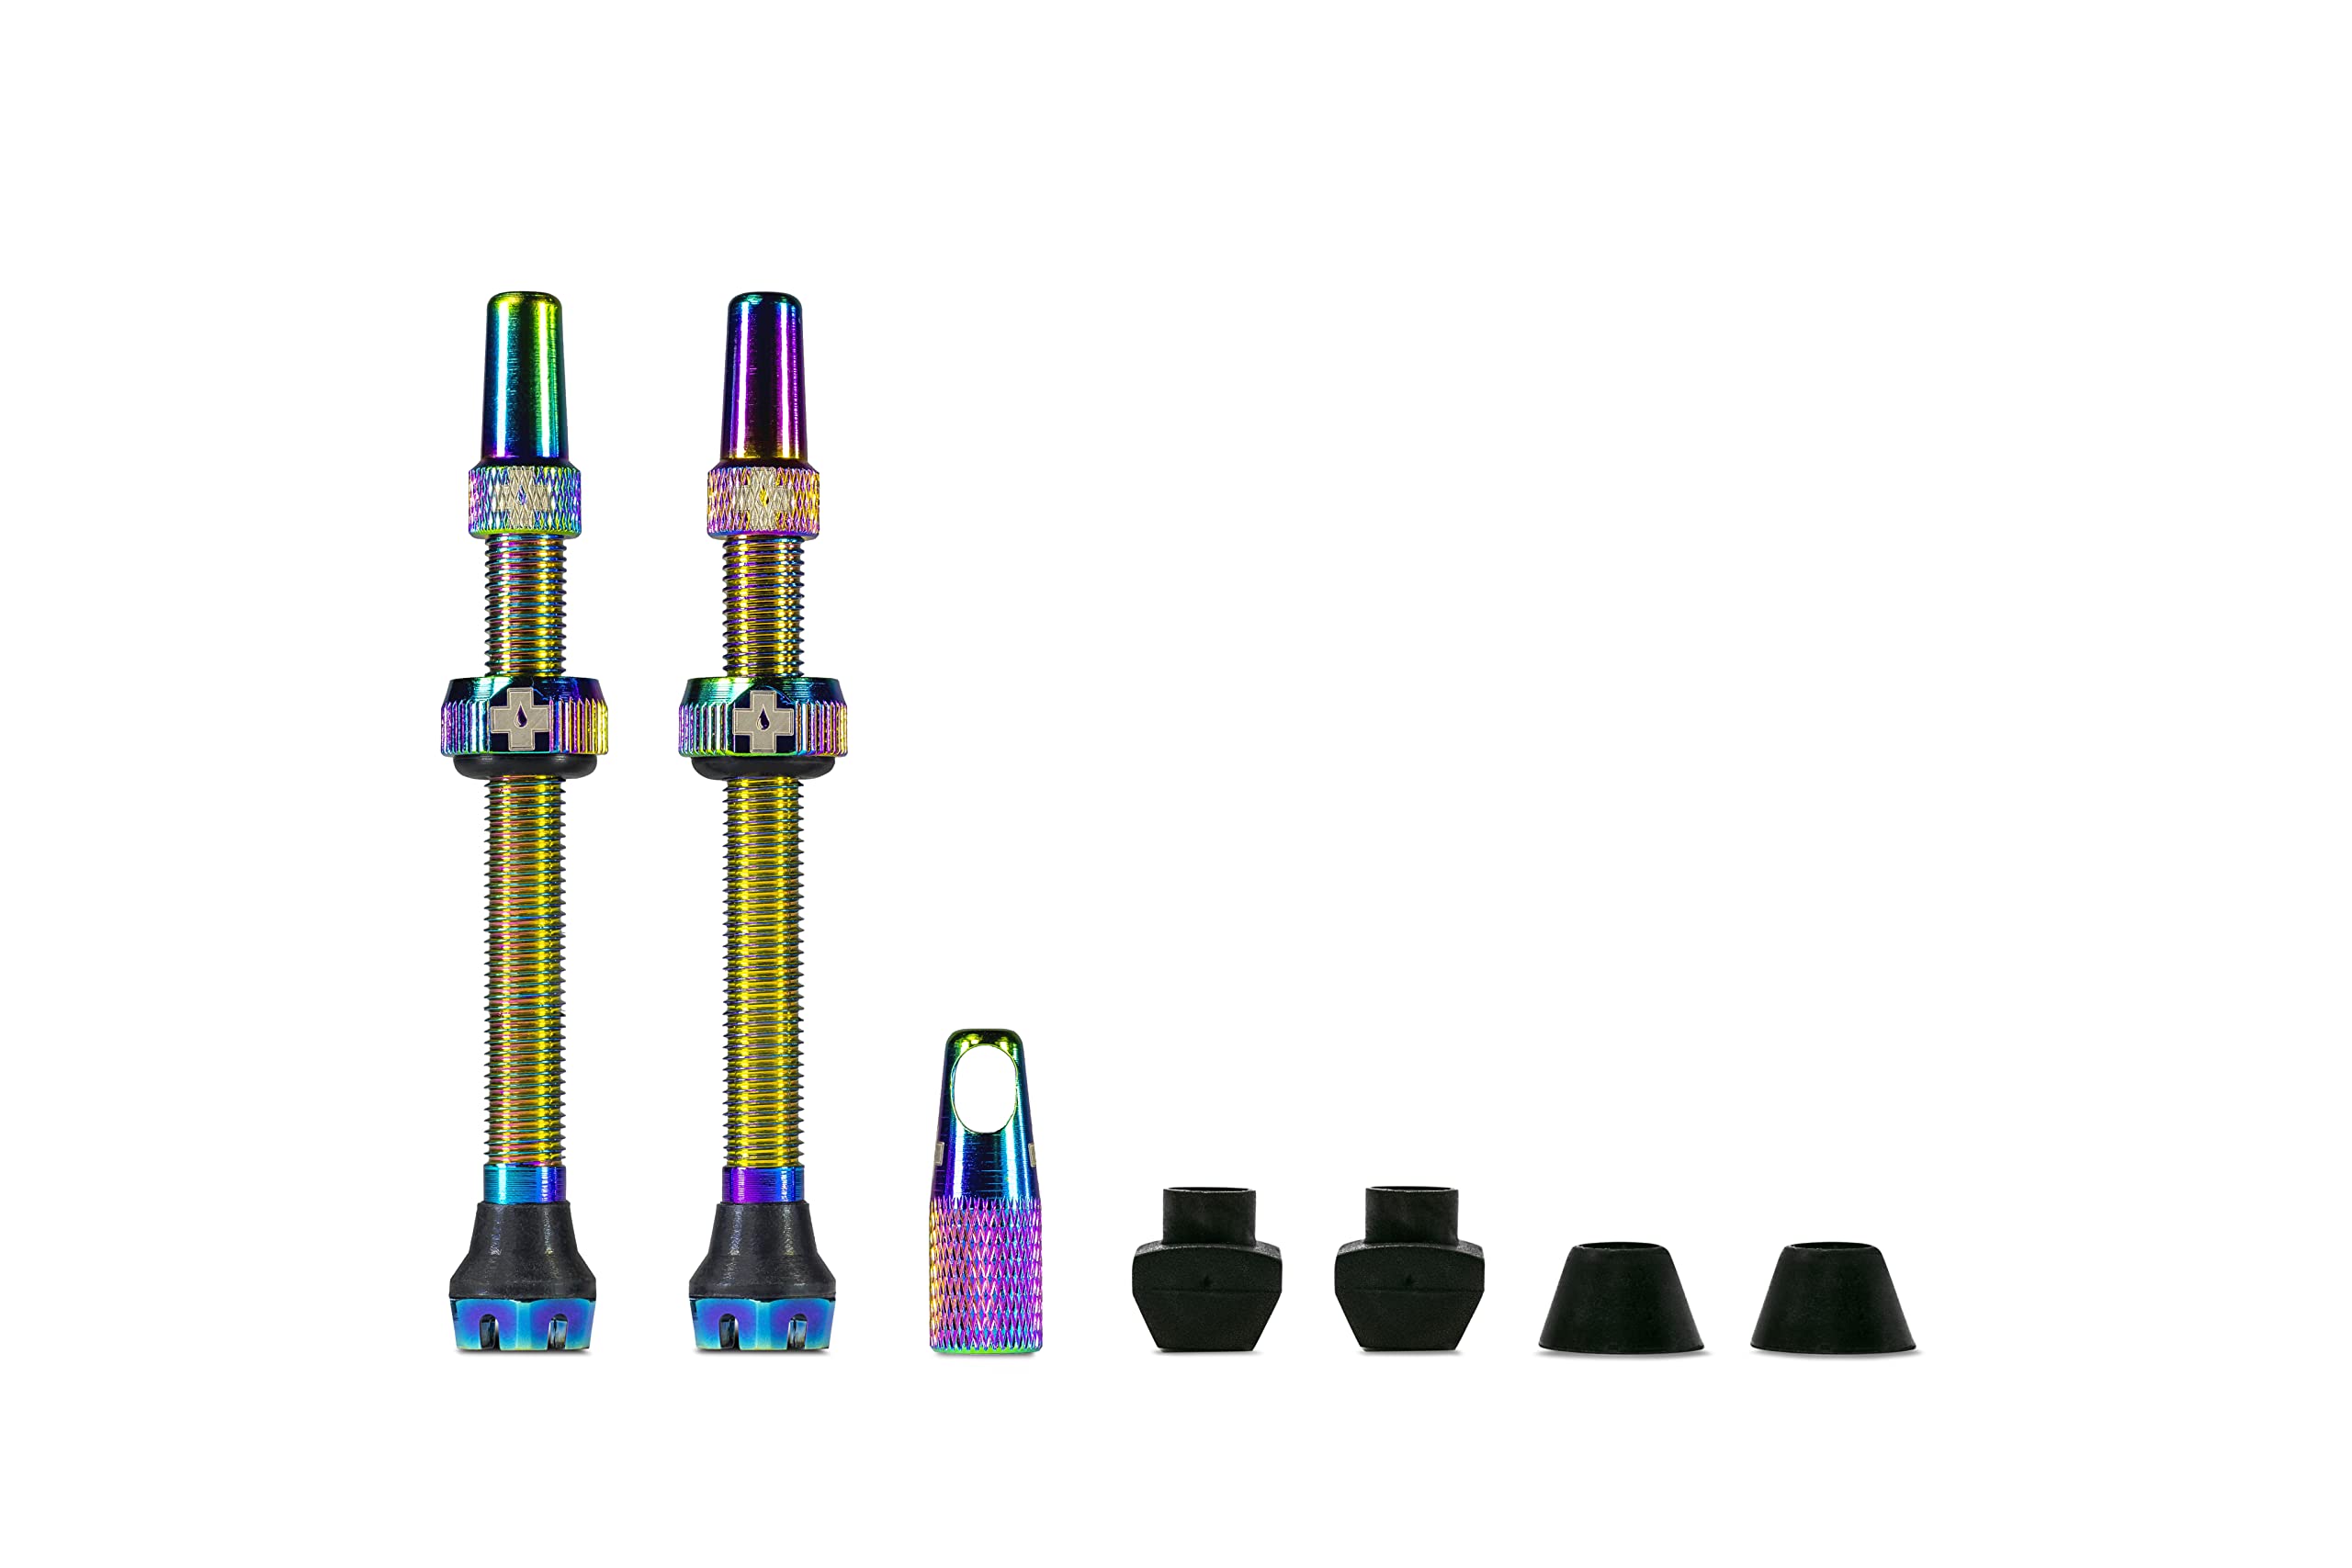 Muc-Off Regenbogenfarbige Presta Tubeless Ventile, 60 mm - Hochwertige Anti-Leck Fahrradventile mit integriertem Werkzeug zum Entfernen des Ventilkerns